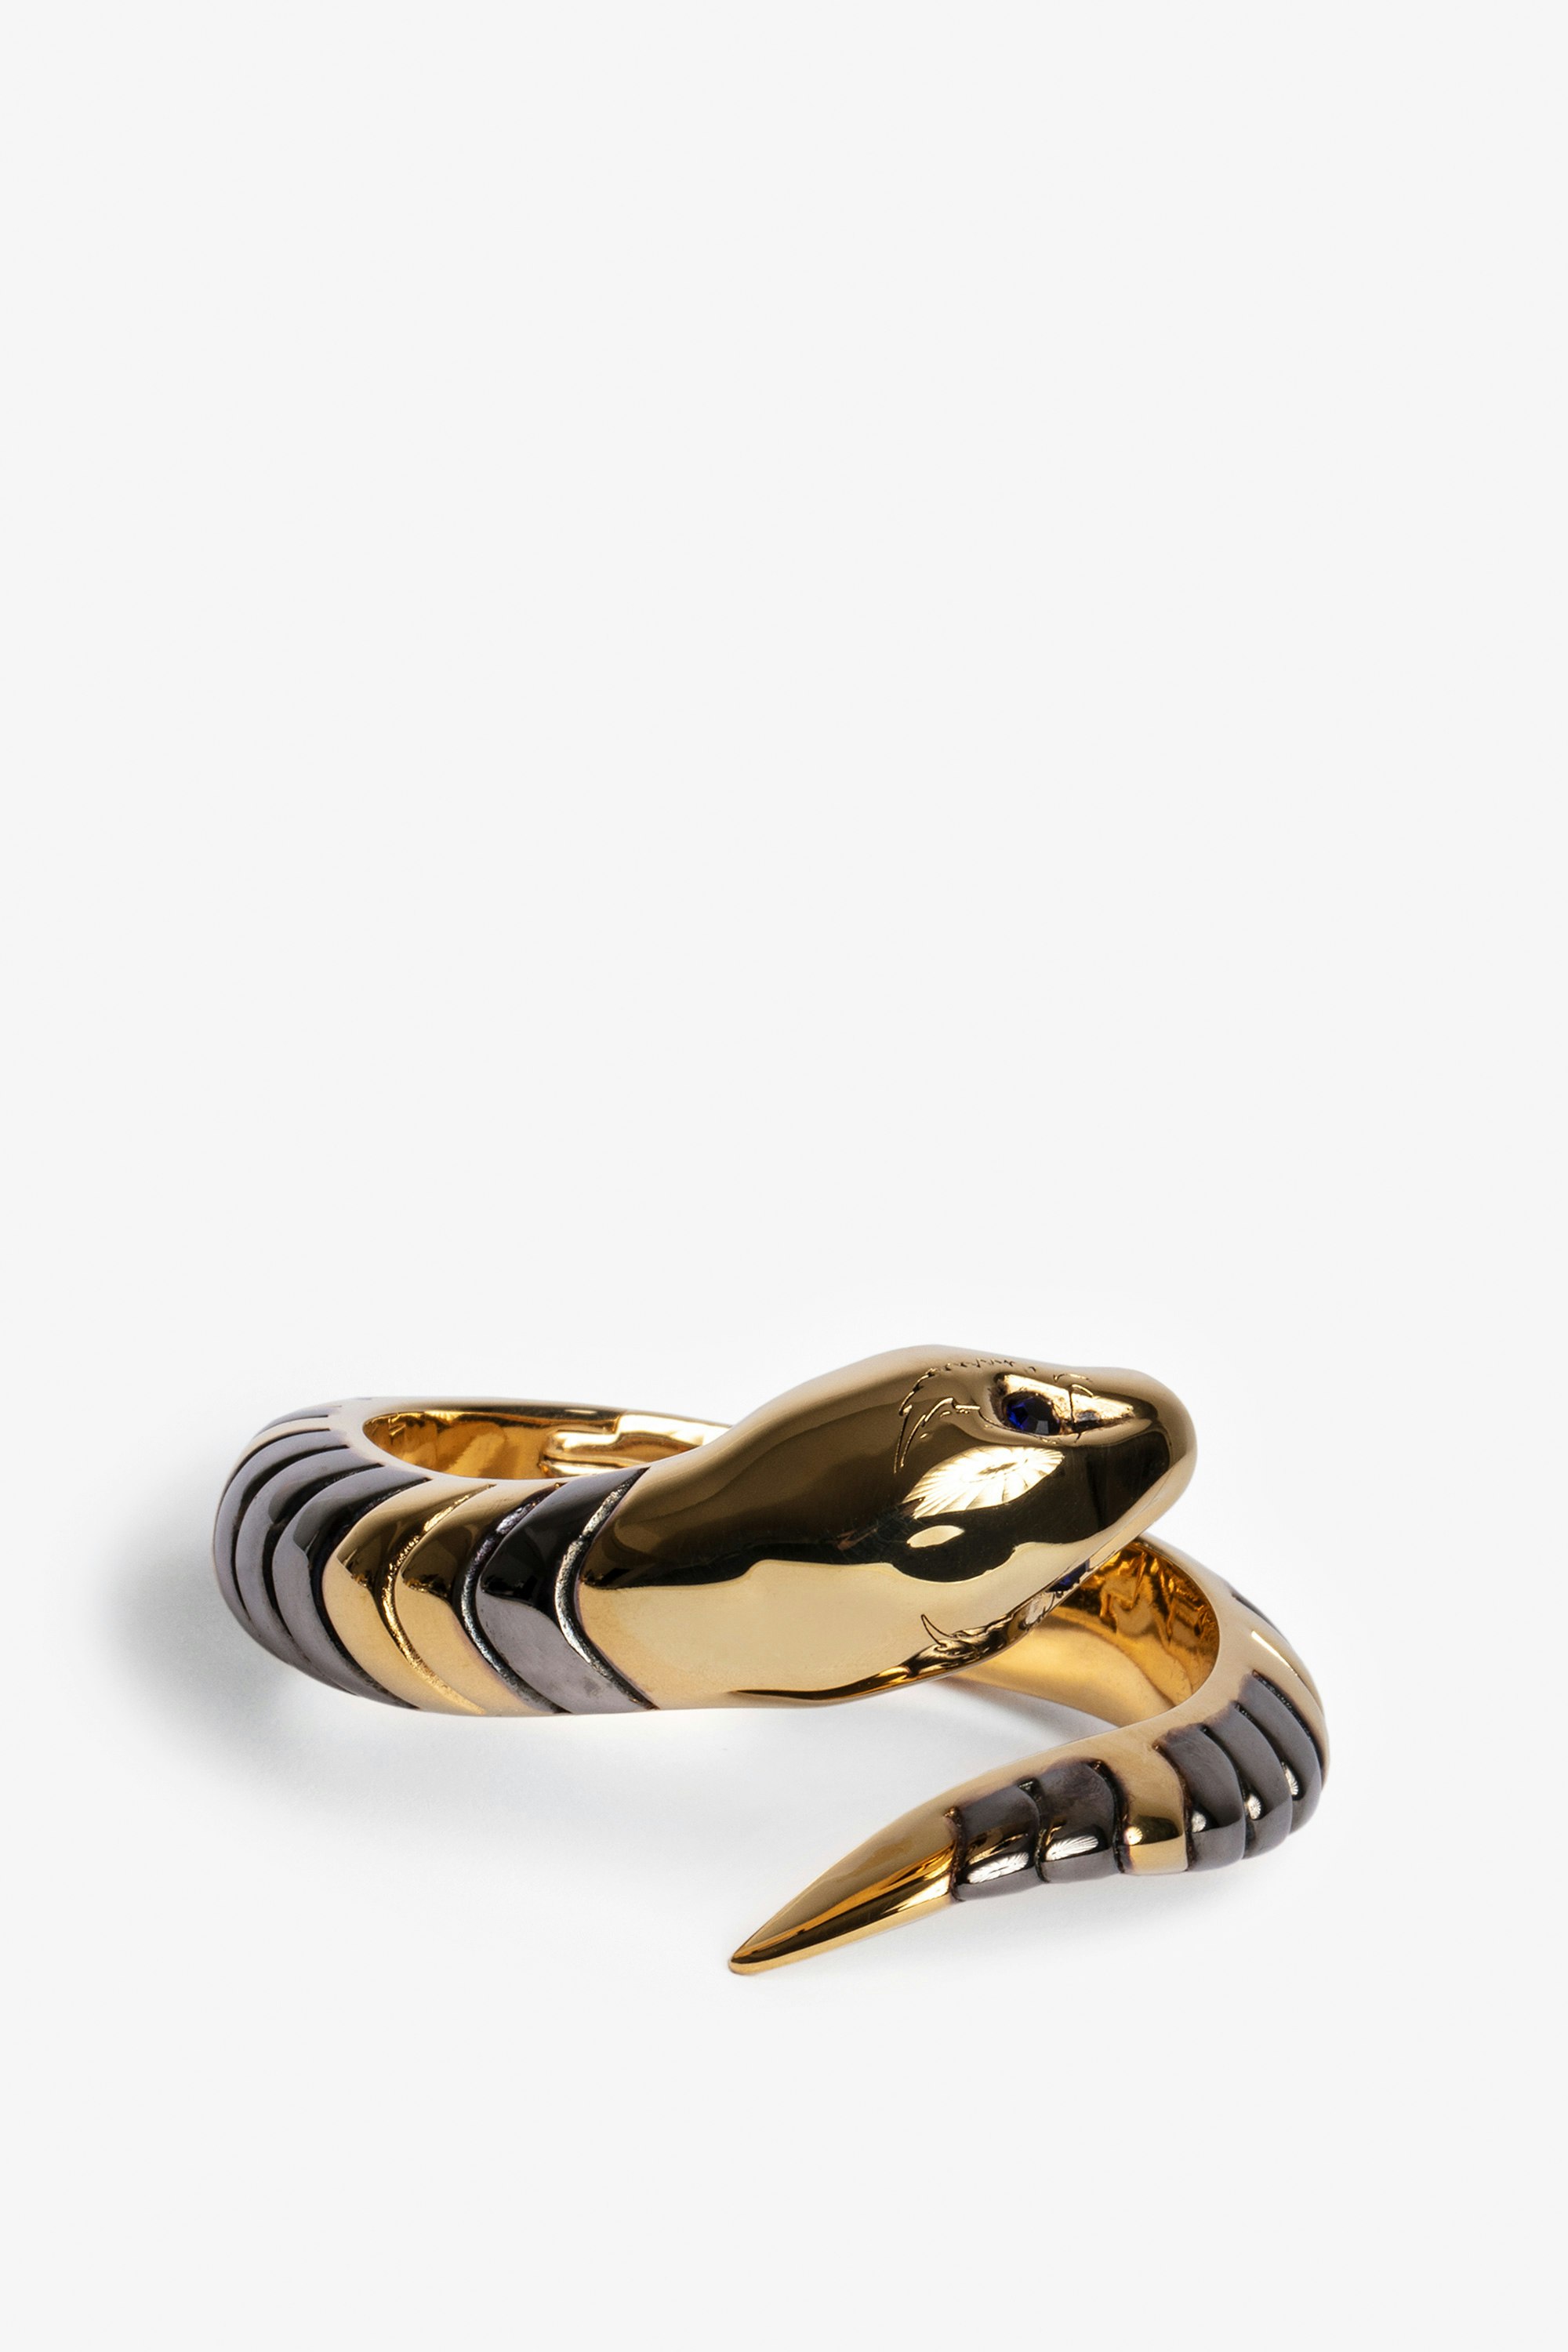 Snake Bracelet Women’s gold-tone brass bracelet.